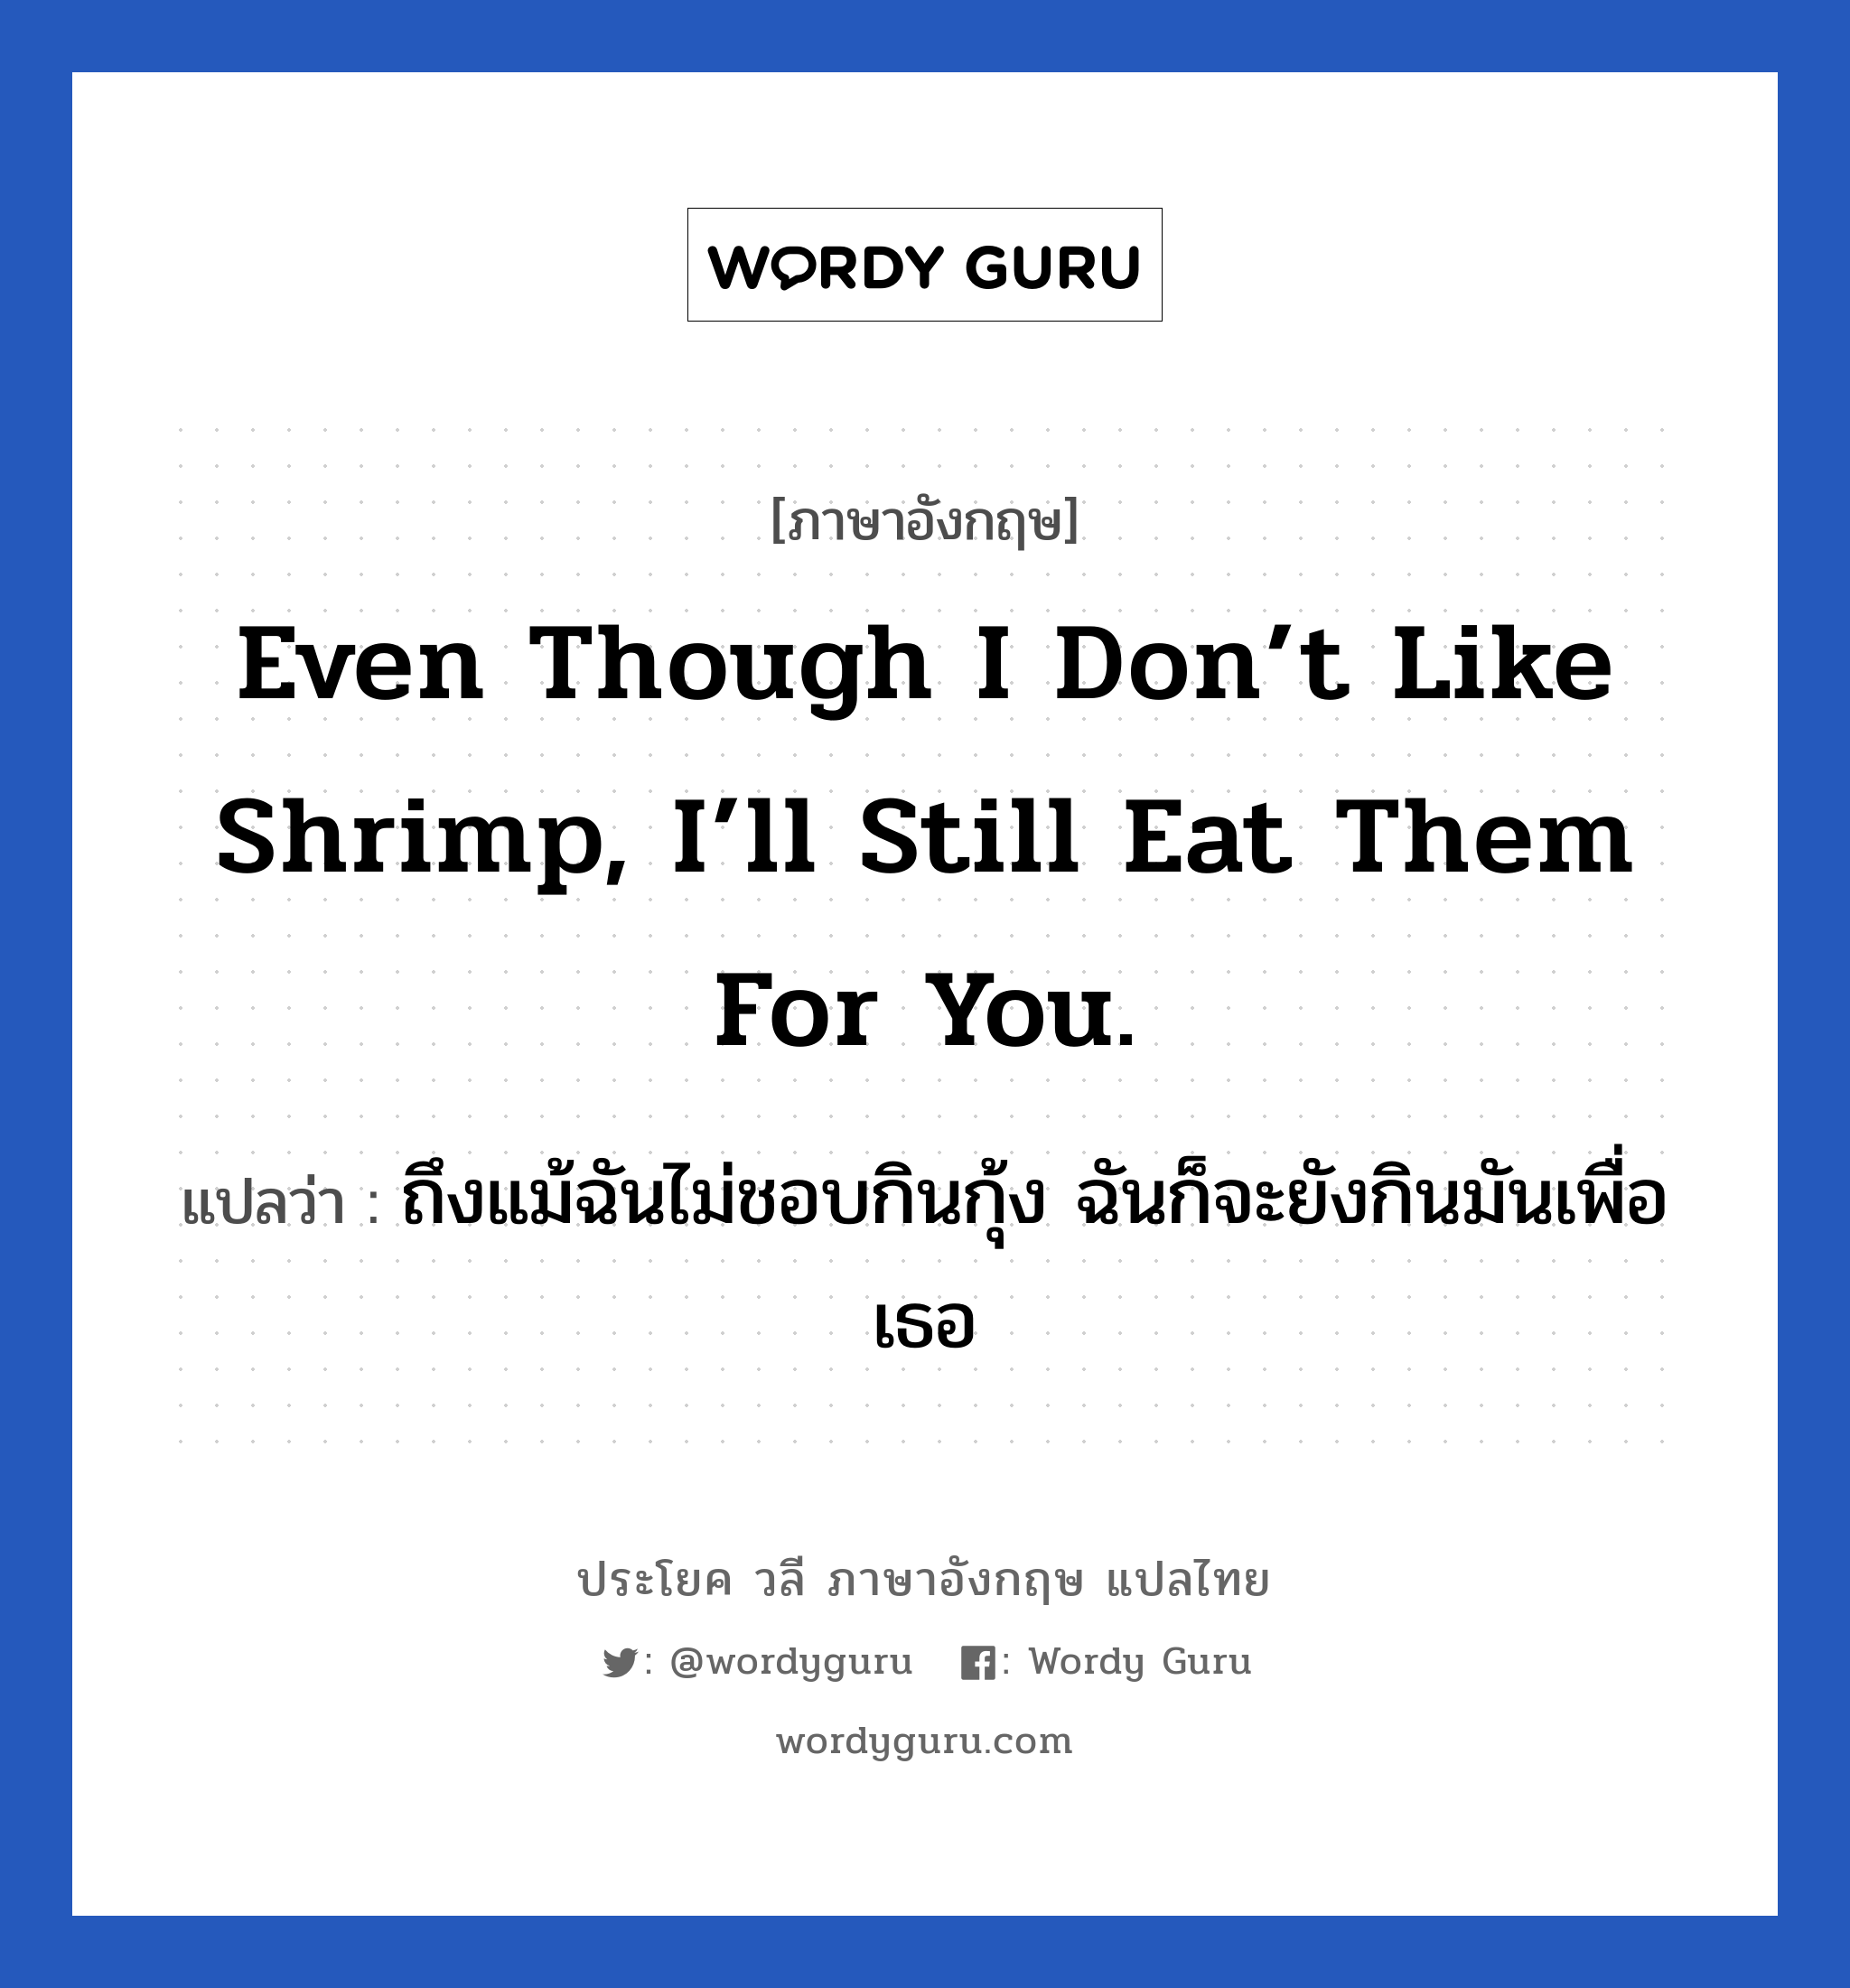 ถึงแม้ฉันไม่ชอบกินกุ้ง ฉันก็จะยังกินมันเพื่อเธอ ภาษาอังกฤษ?, วลีภาษาอังกฤษ ถึงแม้ฉันไม่ชอบกินกุ้ง ฉันก็จะยังกินมันเพื่อเธอ แปลว่า Even though I don’t like shrimp, I’ll still eat them for you.